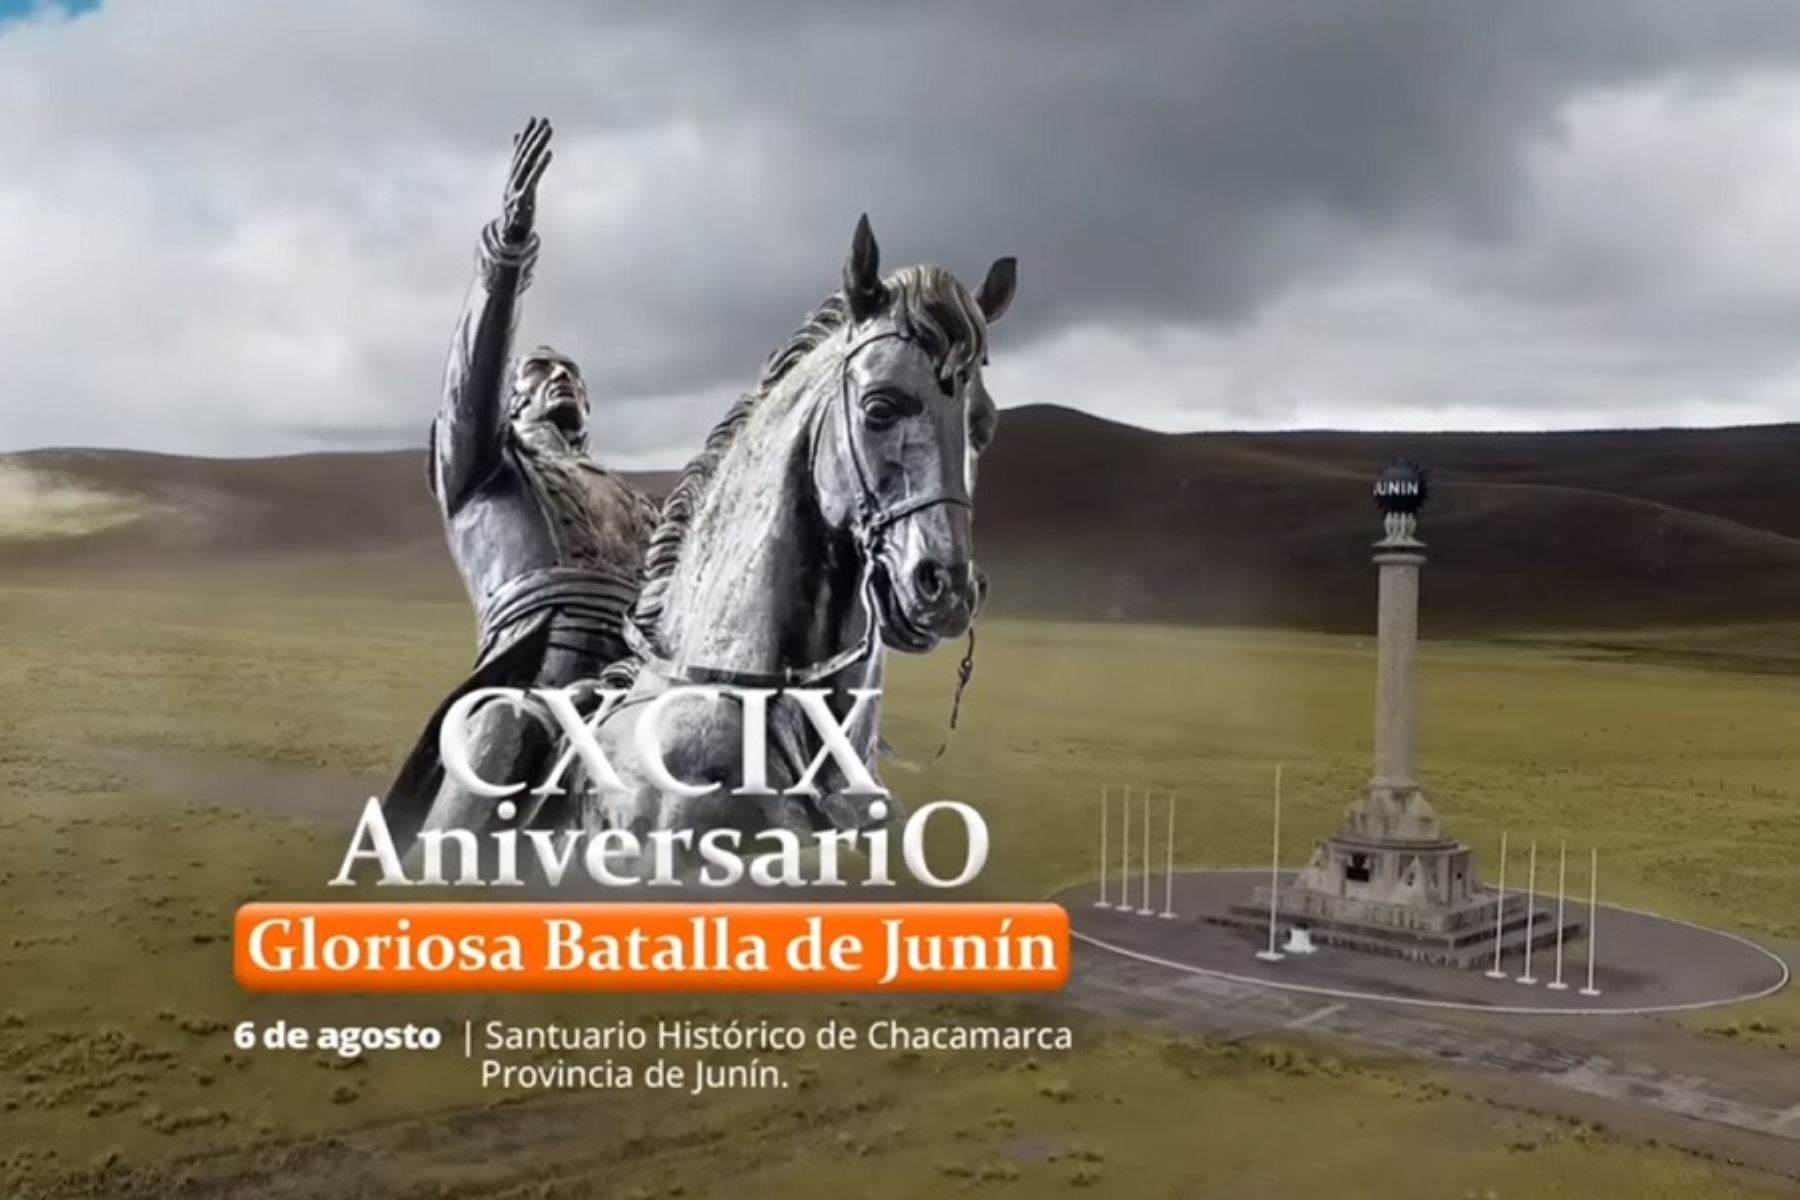 Este domingo 6 de agosto se conmemora el 199 aniversario de la célebre batalla de Junín, primera gran victoria del ejército patriota encabezado por el libertador Simón Bolívar y cuyo triunfo fue crucial para consolidar la Independencia de Perú, al igual que la de Sudamérica.